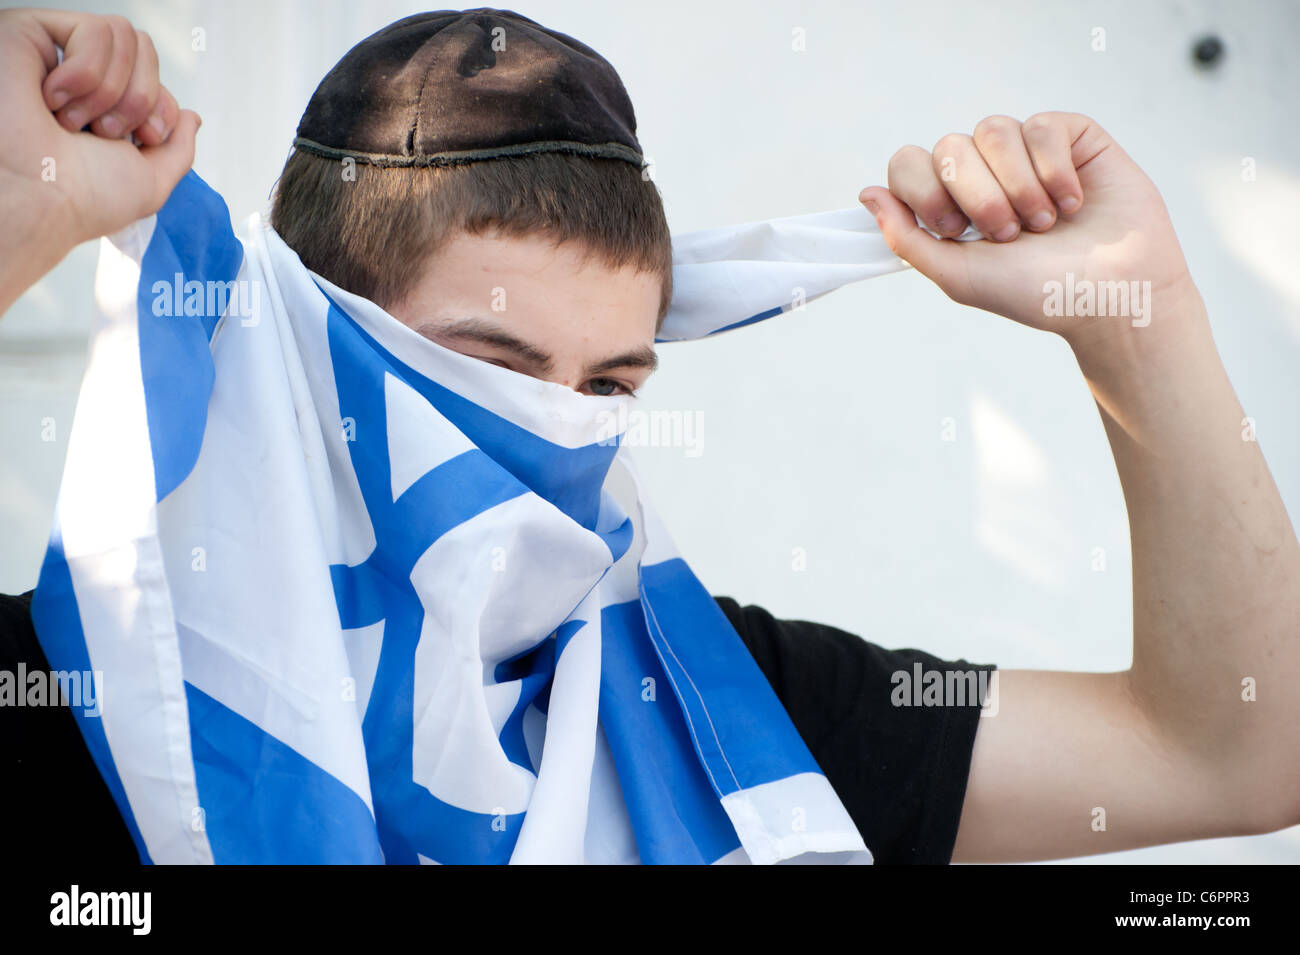 Un colono judío de jóvenes viviendo en una casa palestina en Jerusalén oriental, cubre su cara con una bandera israelí. Foto de stock